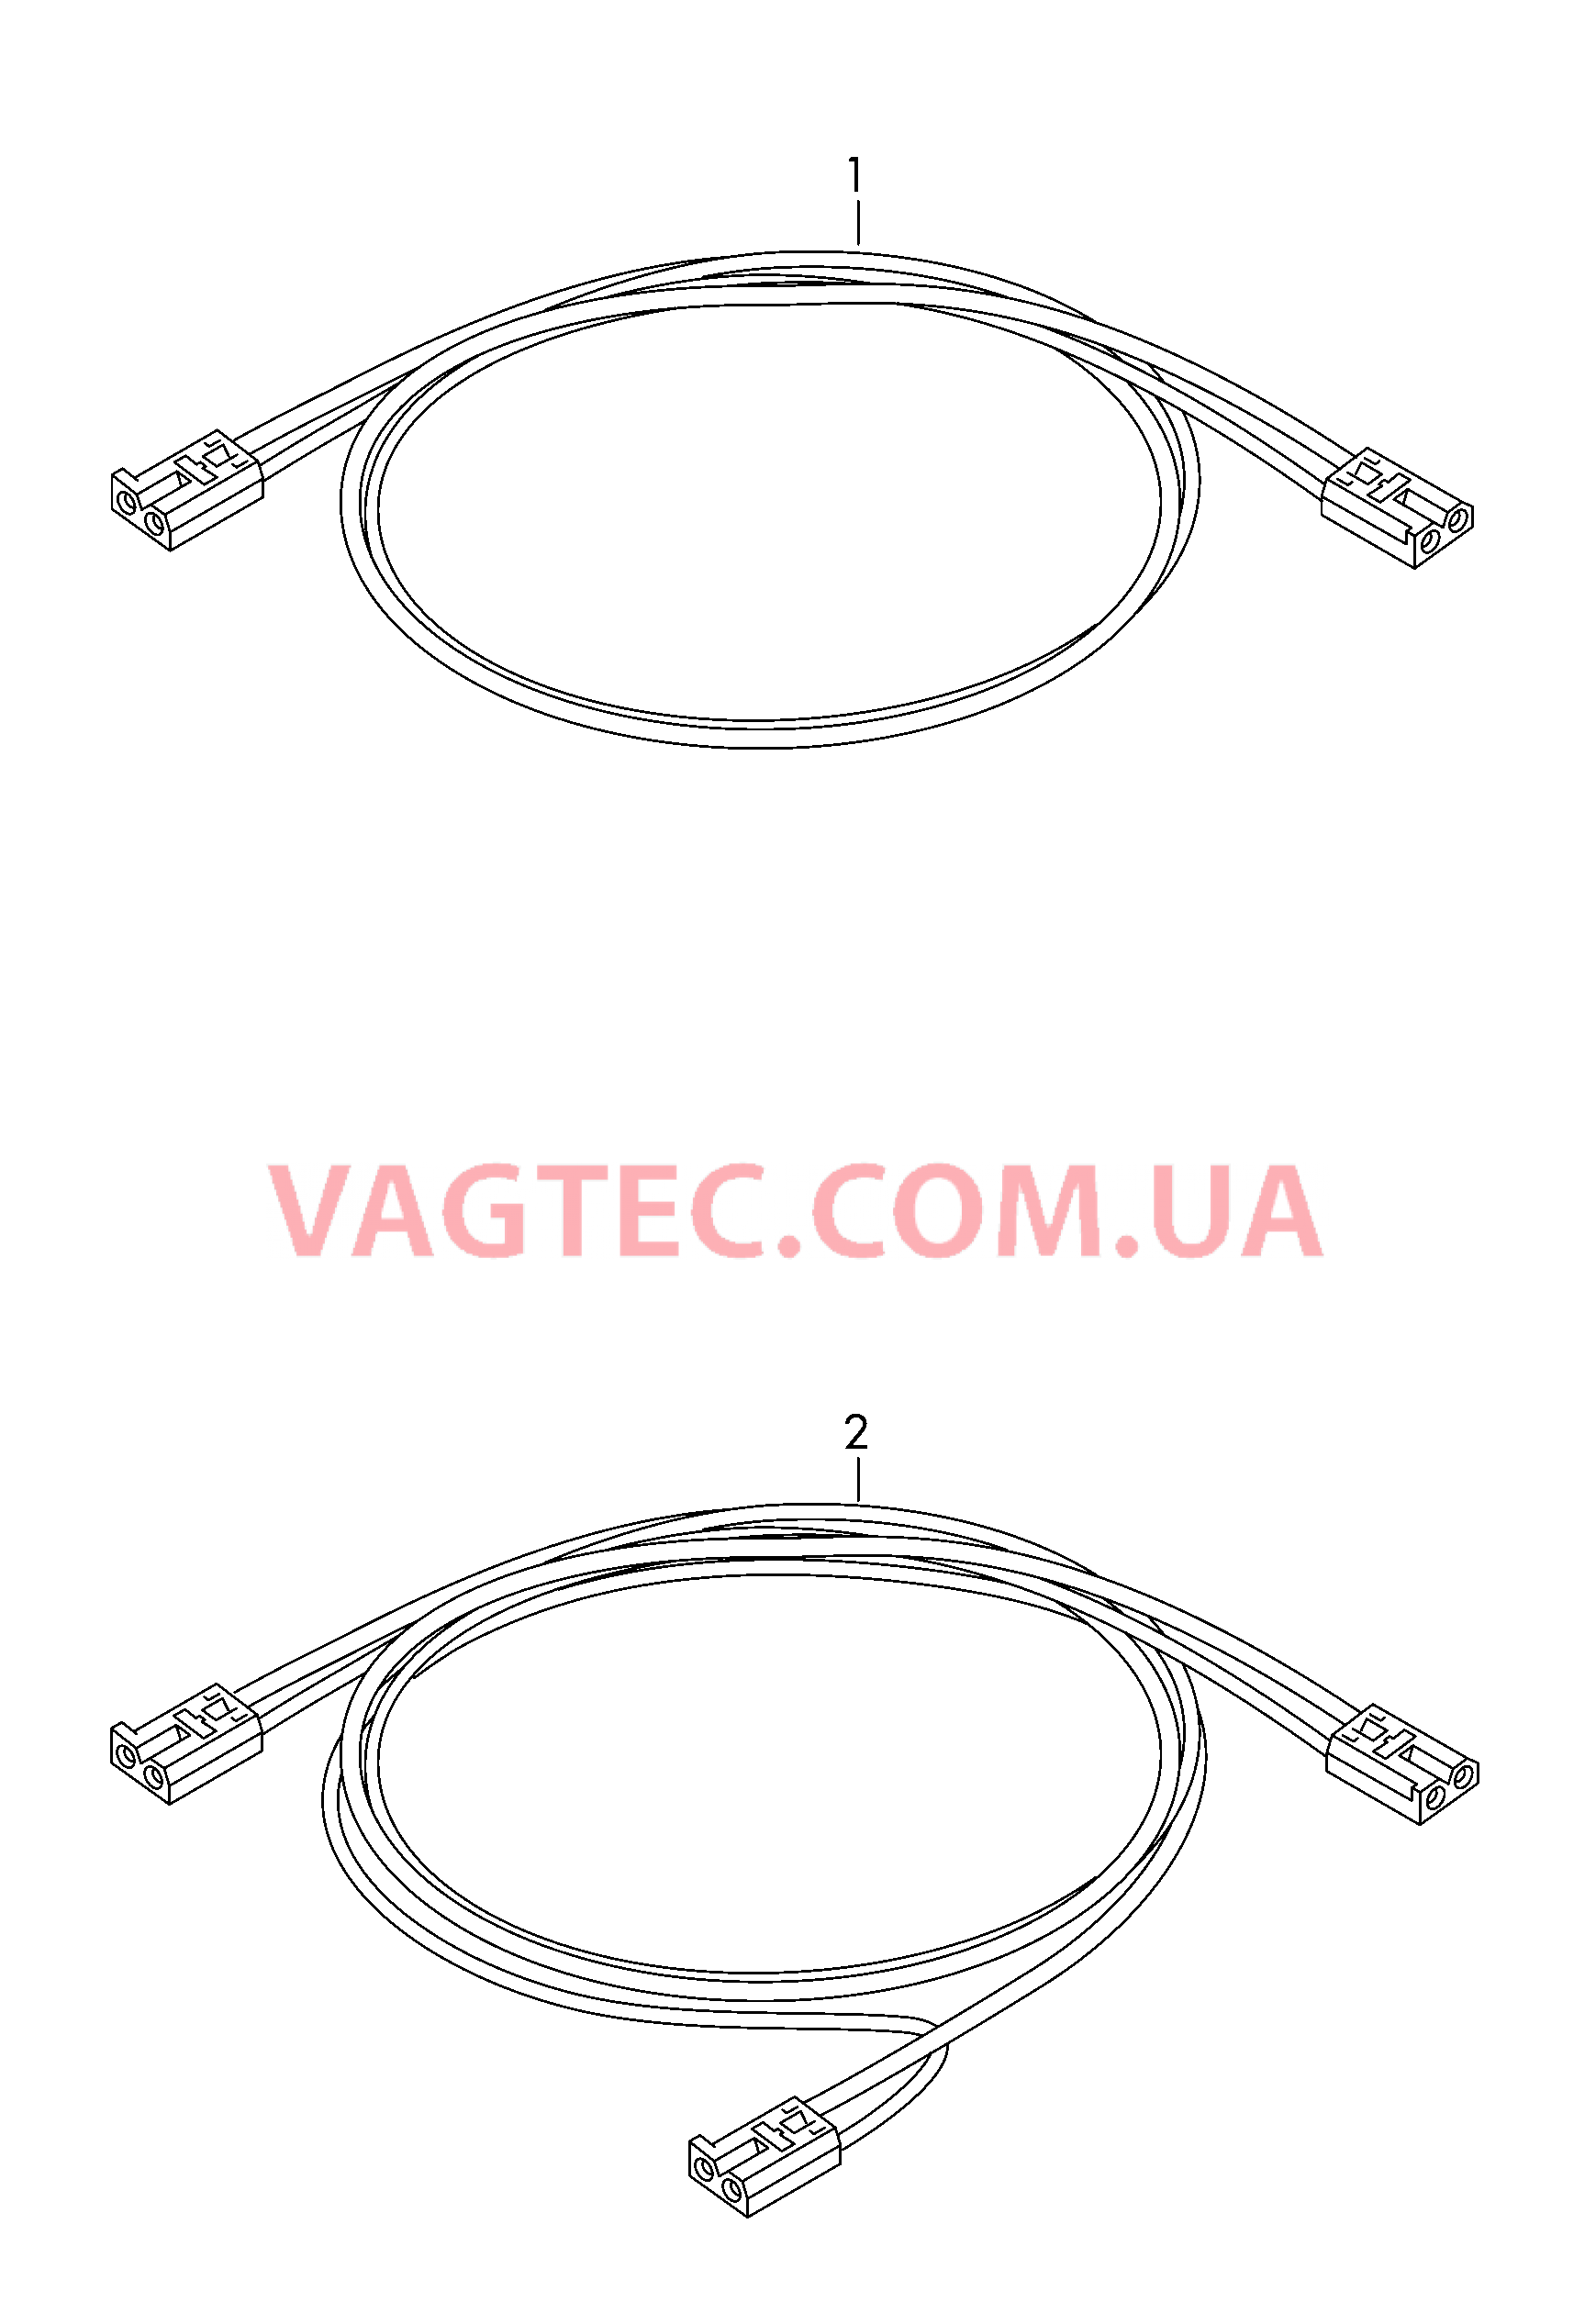 Оптоволоконный кабель  для VOLKSWAGEN Crafter 2017